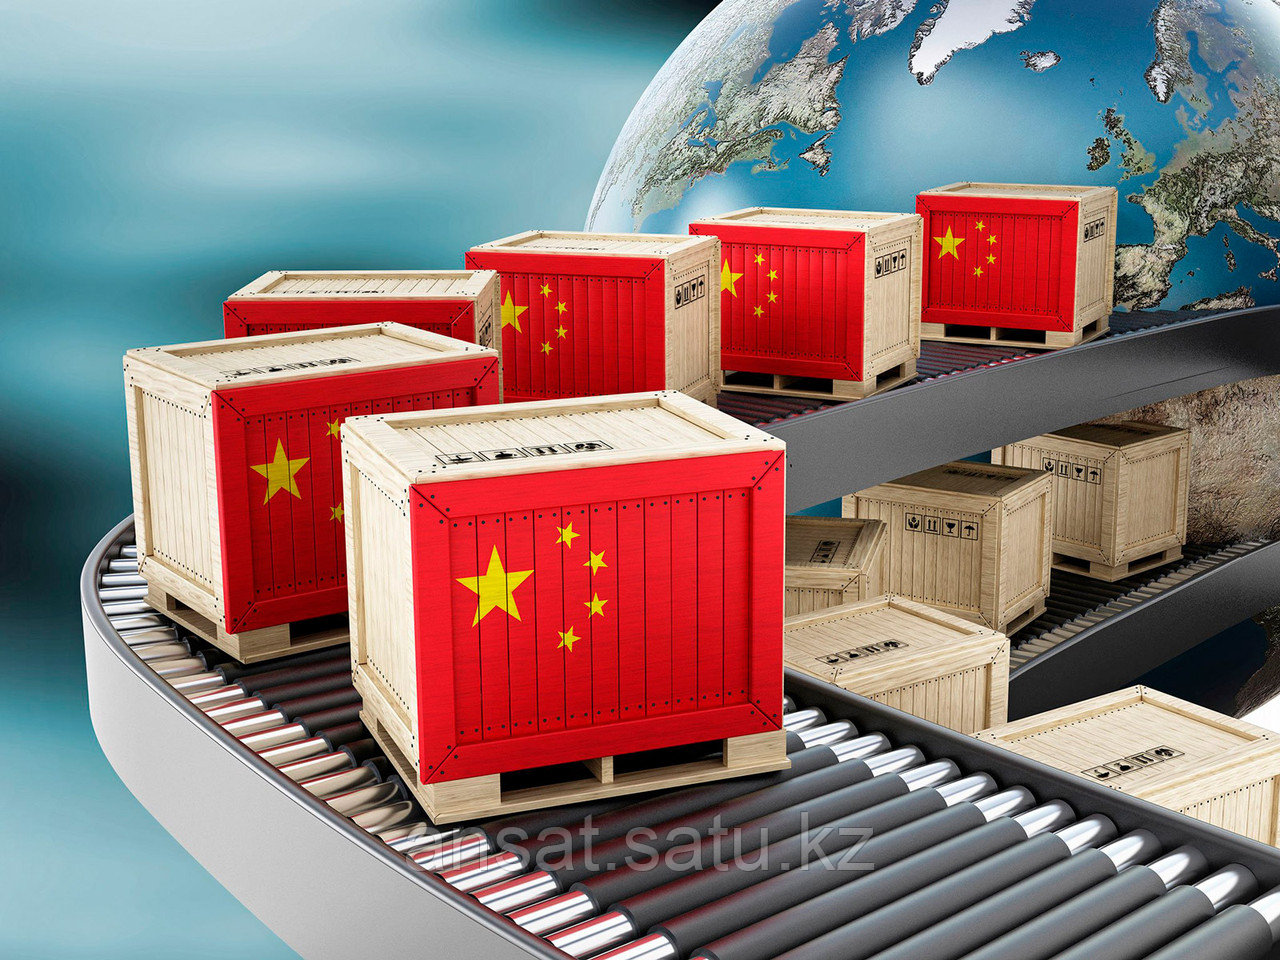 Доставка грузов из Китая